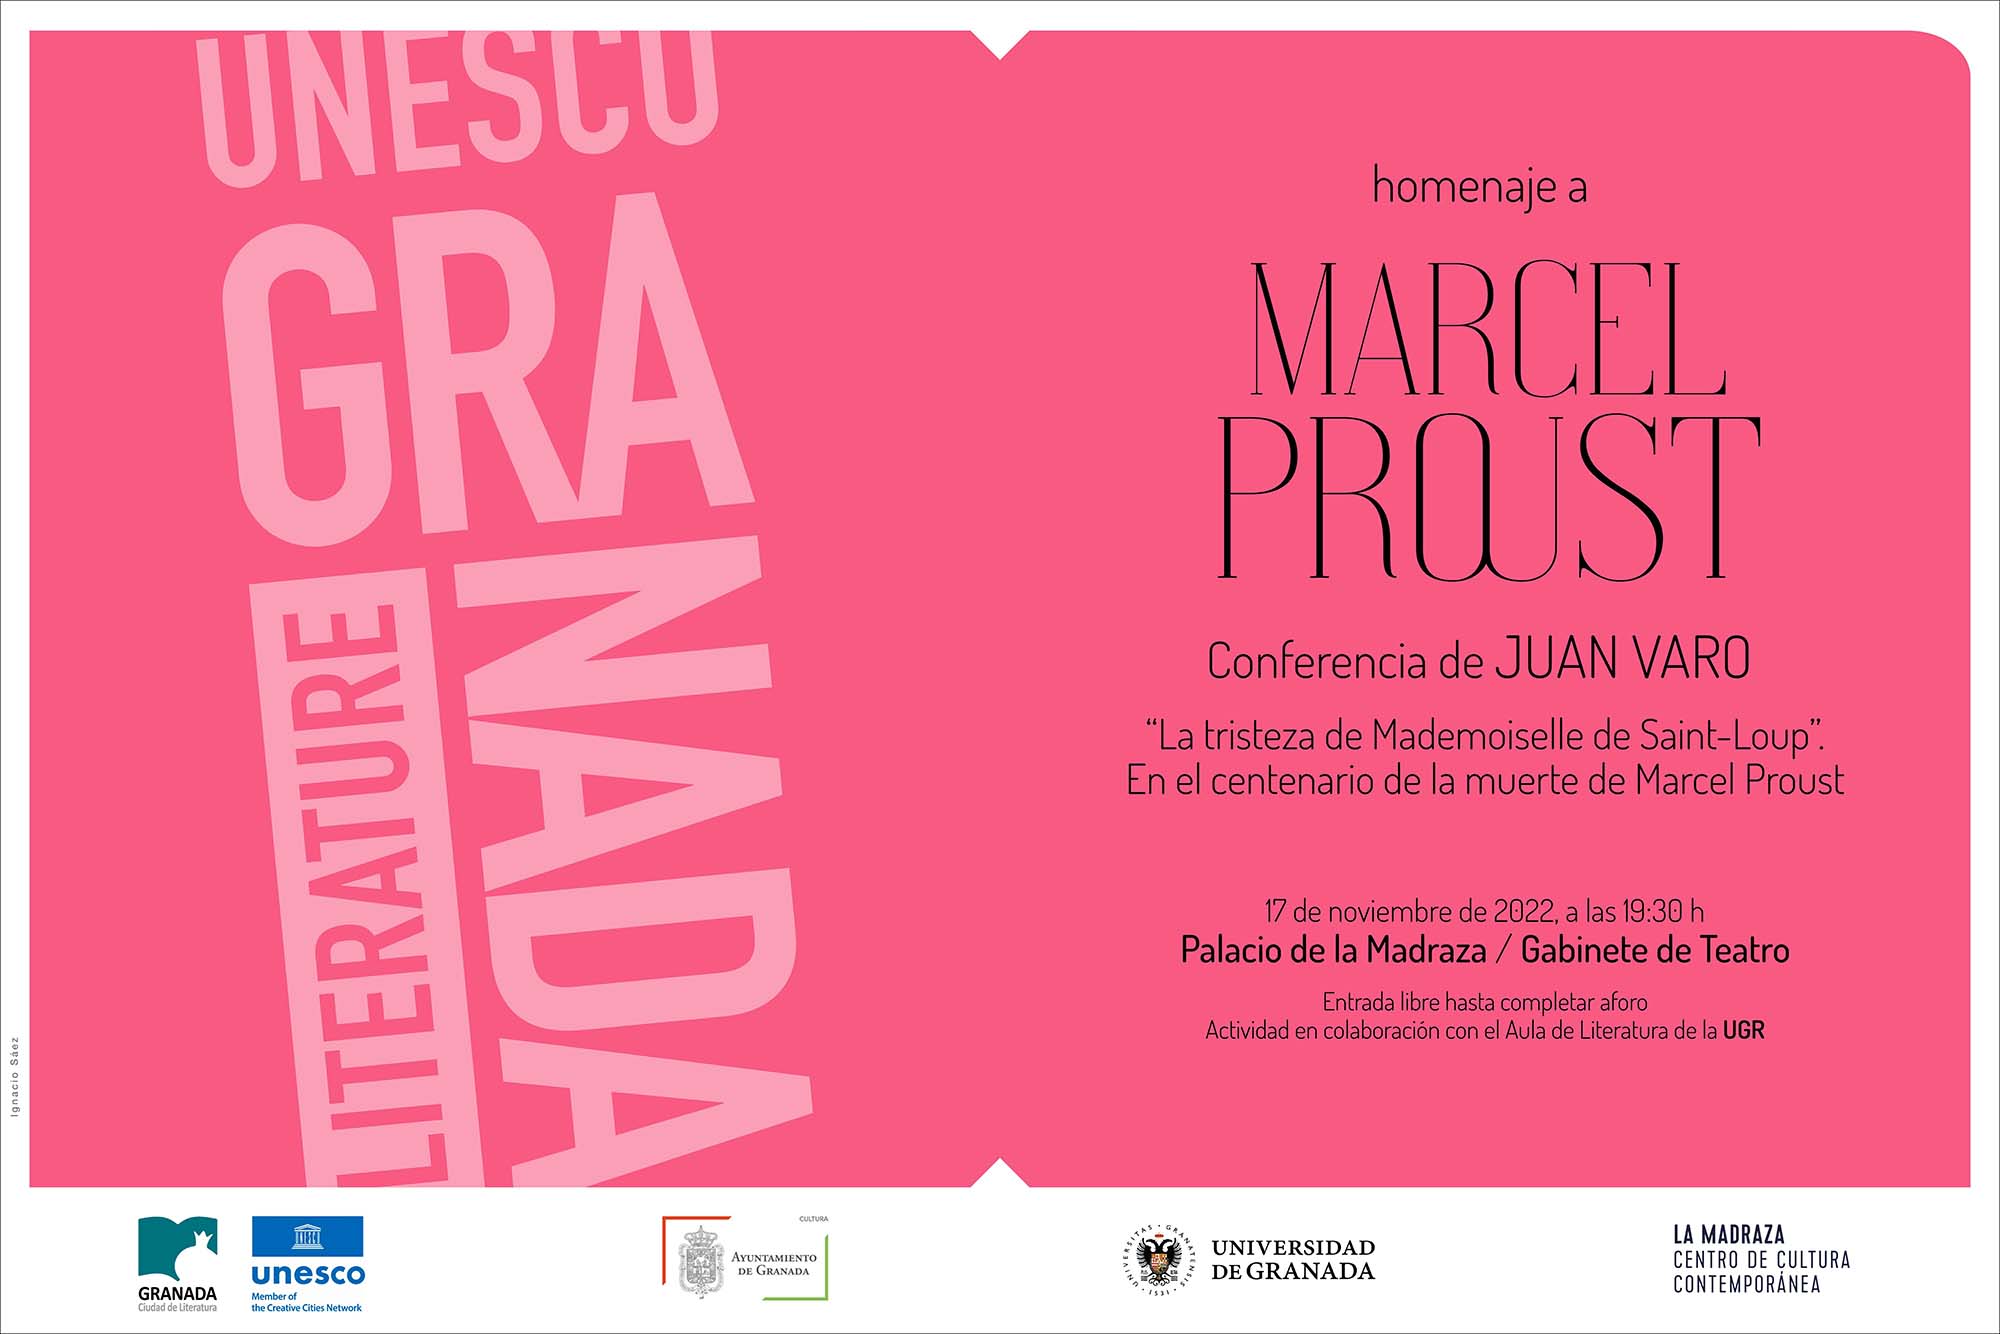 Cartel de la conferencia de Juan Varo sobre Marcel Proust